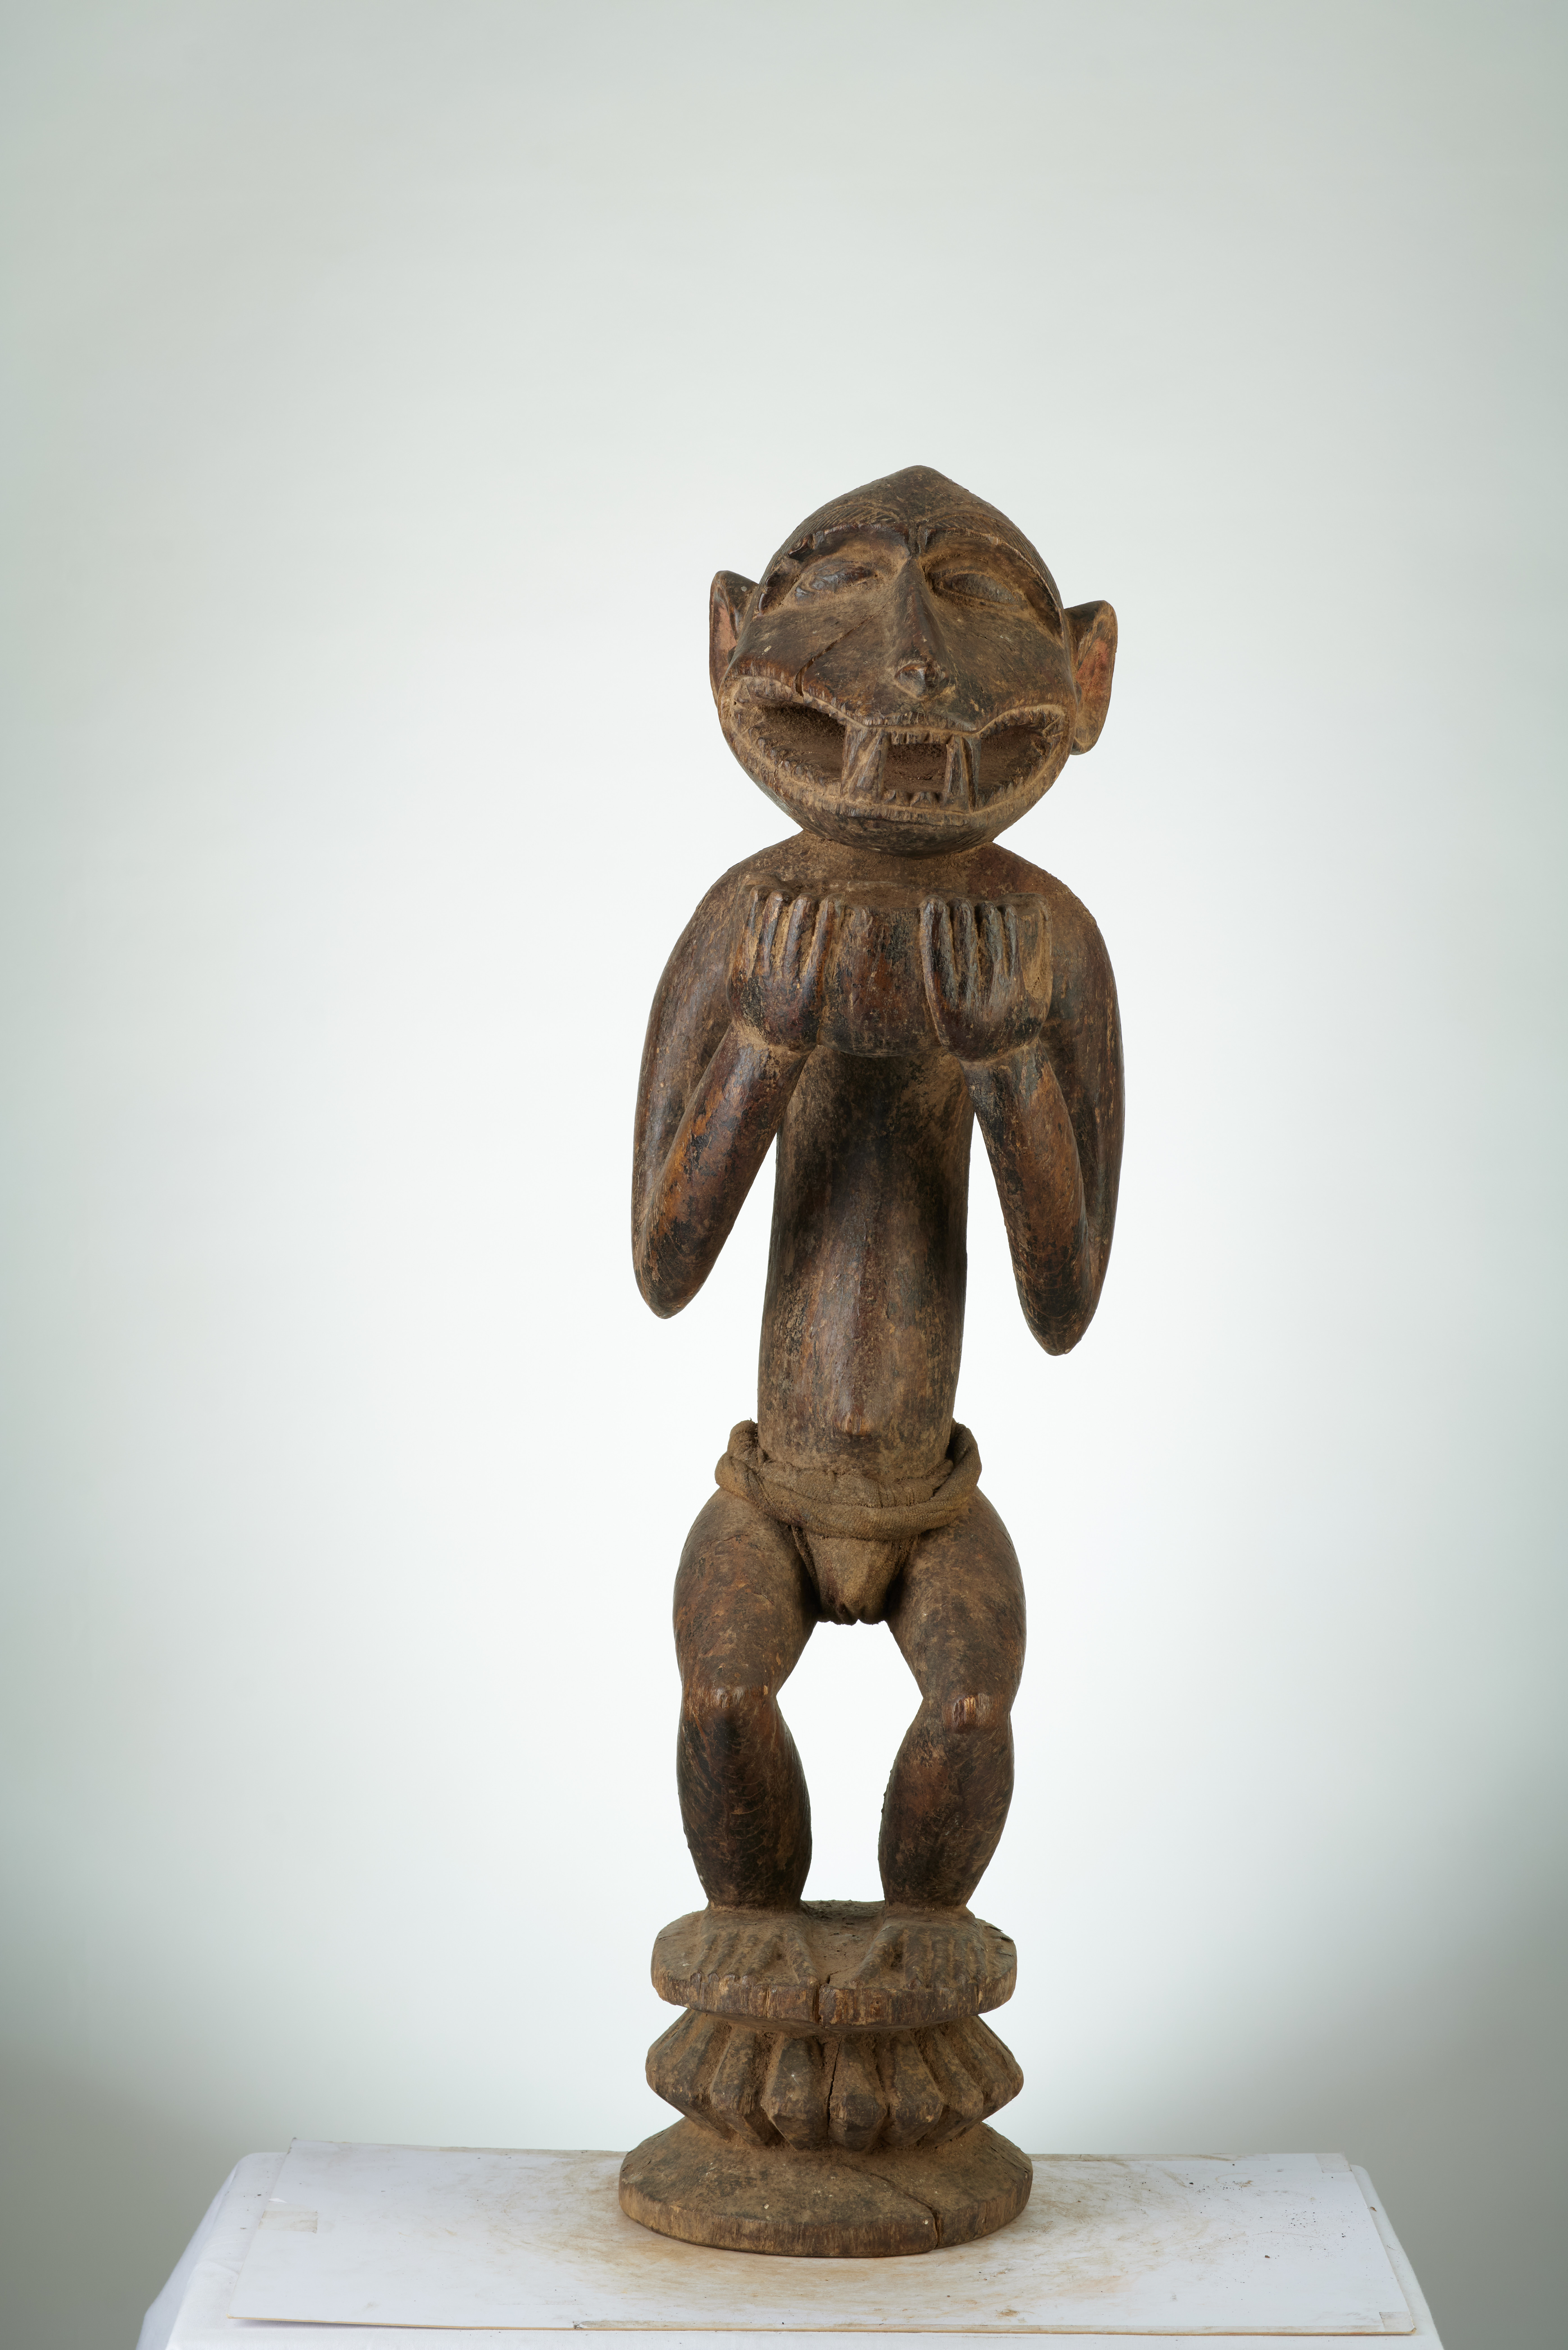 Baoulé (singe debout), d`afrique : MALI, statuette Baoulé (singe debout), masque ancien africain Baoulé (singe debout), art du MALI - Art Africain, collection privées Belgique. Statue africaine de la tribu des Baoulé (singe debout), provenant du MALI, 1872:Porteur de coupe mi homme -mi singe.Il a une coupe dans les mains pour recevoir des offrandes voirn°749 (pères blancs Paris)

Een beker drager half mens -half aap.Hij draagt een beker met beide handen om offrandes te bekomen. zie n°749. art,culture,masque,statue,statuette,pot,ivoire,exposition,expo,masque original,masques,statues,statuettes,pots,expositions,expo,masques originaux,collectionneur d`art,art africain,culture africaine,masque africain,statue africaine,statuette africaine,pot africain,ivoire africain,exposition africain,expo africain,masque origina africainl,masques africains,statues africaines,statuettes africaines,pots africains,expositions africaines,expo africaines,masques originaux  africains,collectionneur d`art africain